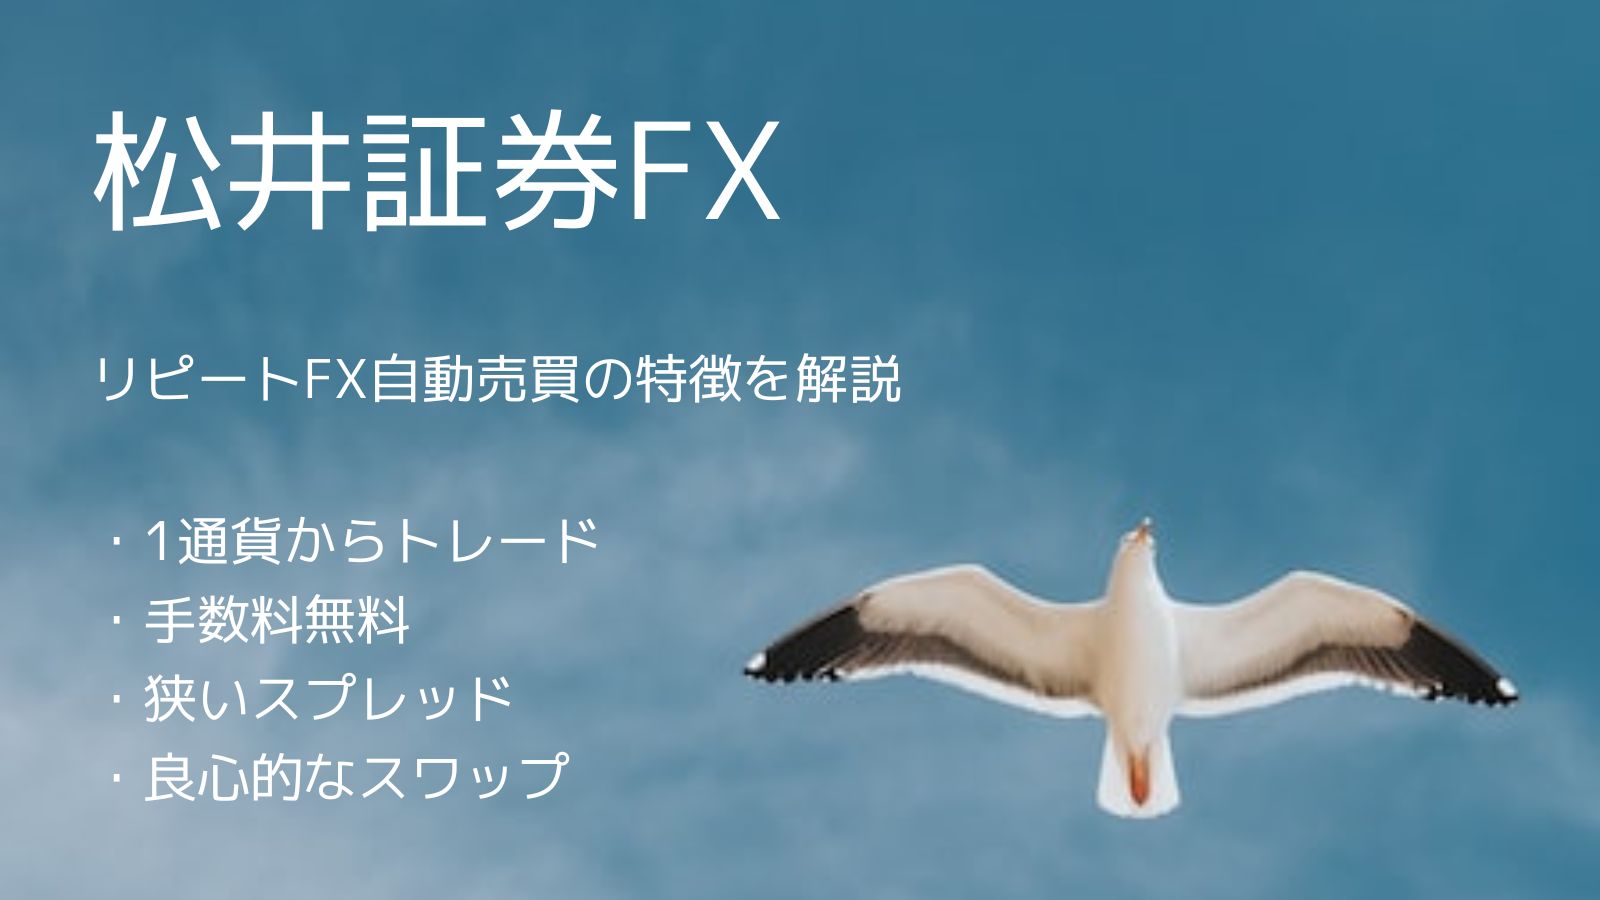 松井証券FXで1通貨から自動売買 リピートFXでは群を抜くハイスペック